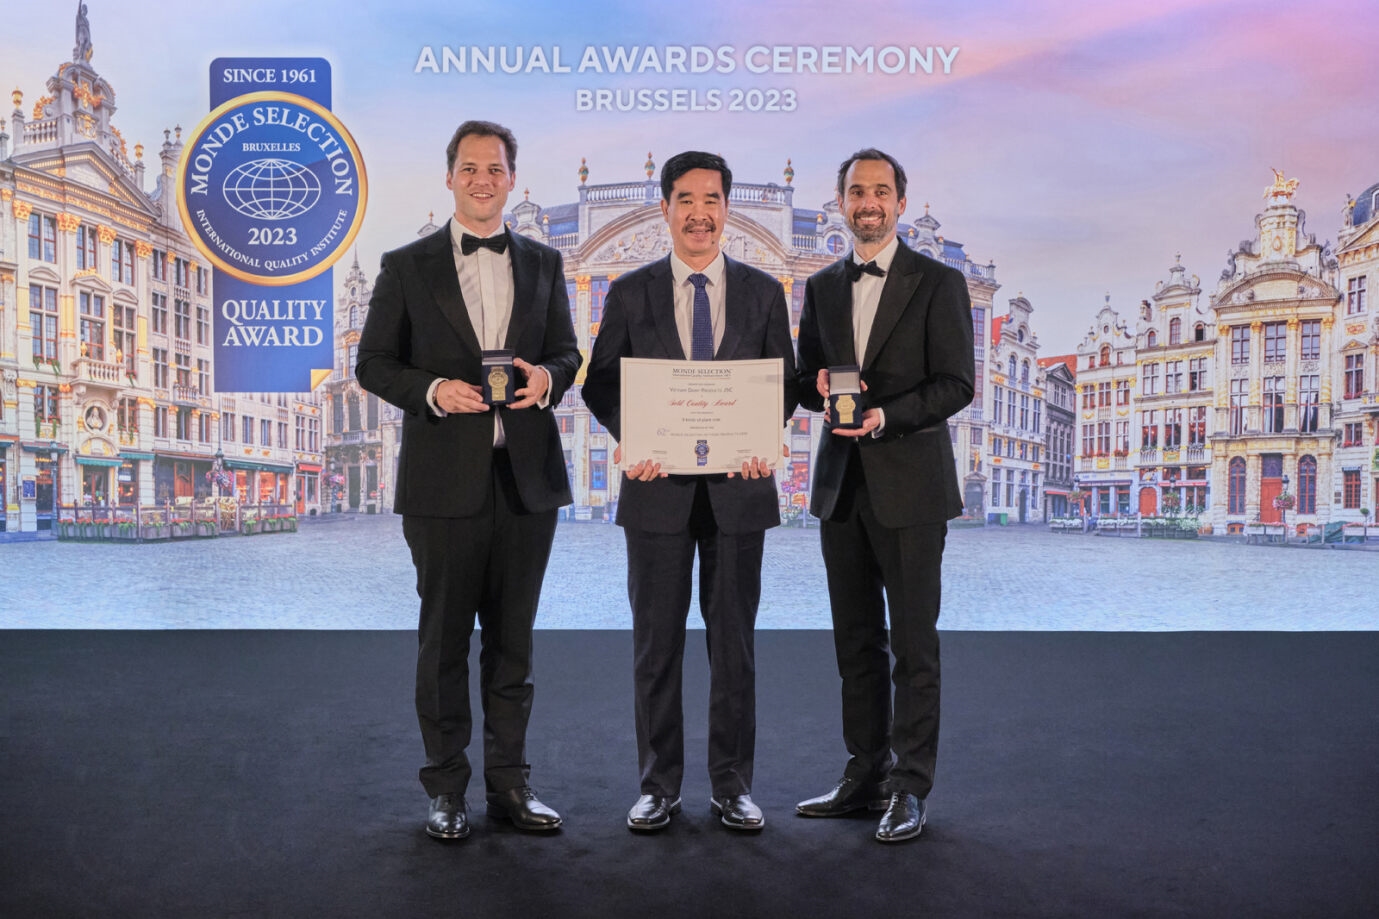 Ông Nguyễn Quốc Khánh, Giám đốc điều hành Nghiên cứu & Phát triển đại diện Vinamilk, nhận 2 giải Vàng về Chất lượng từ tổ chức Monde Selection